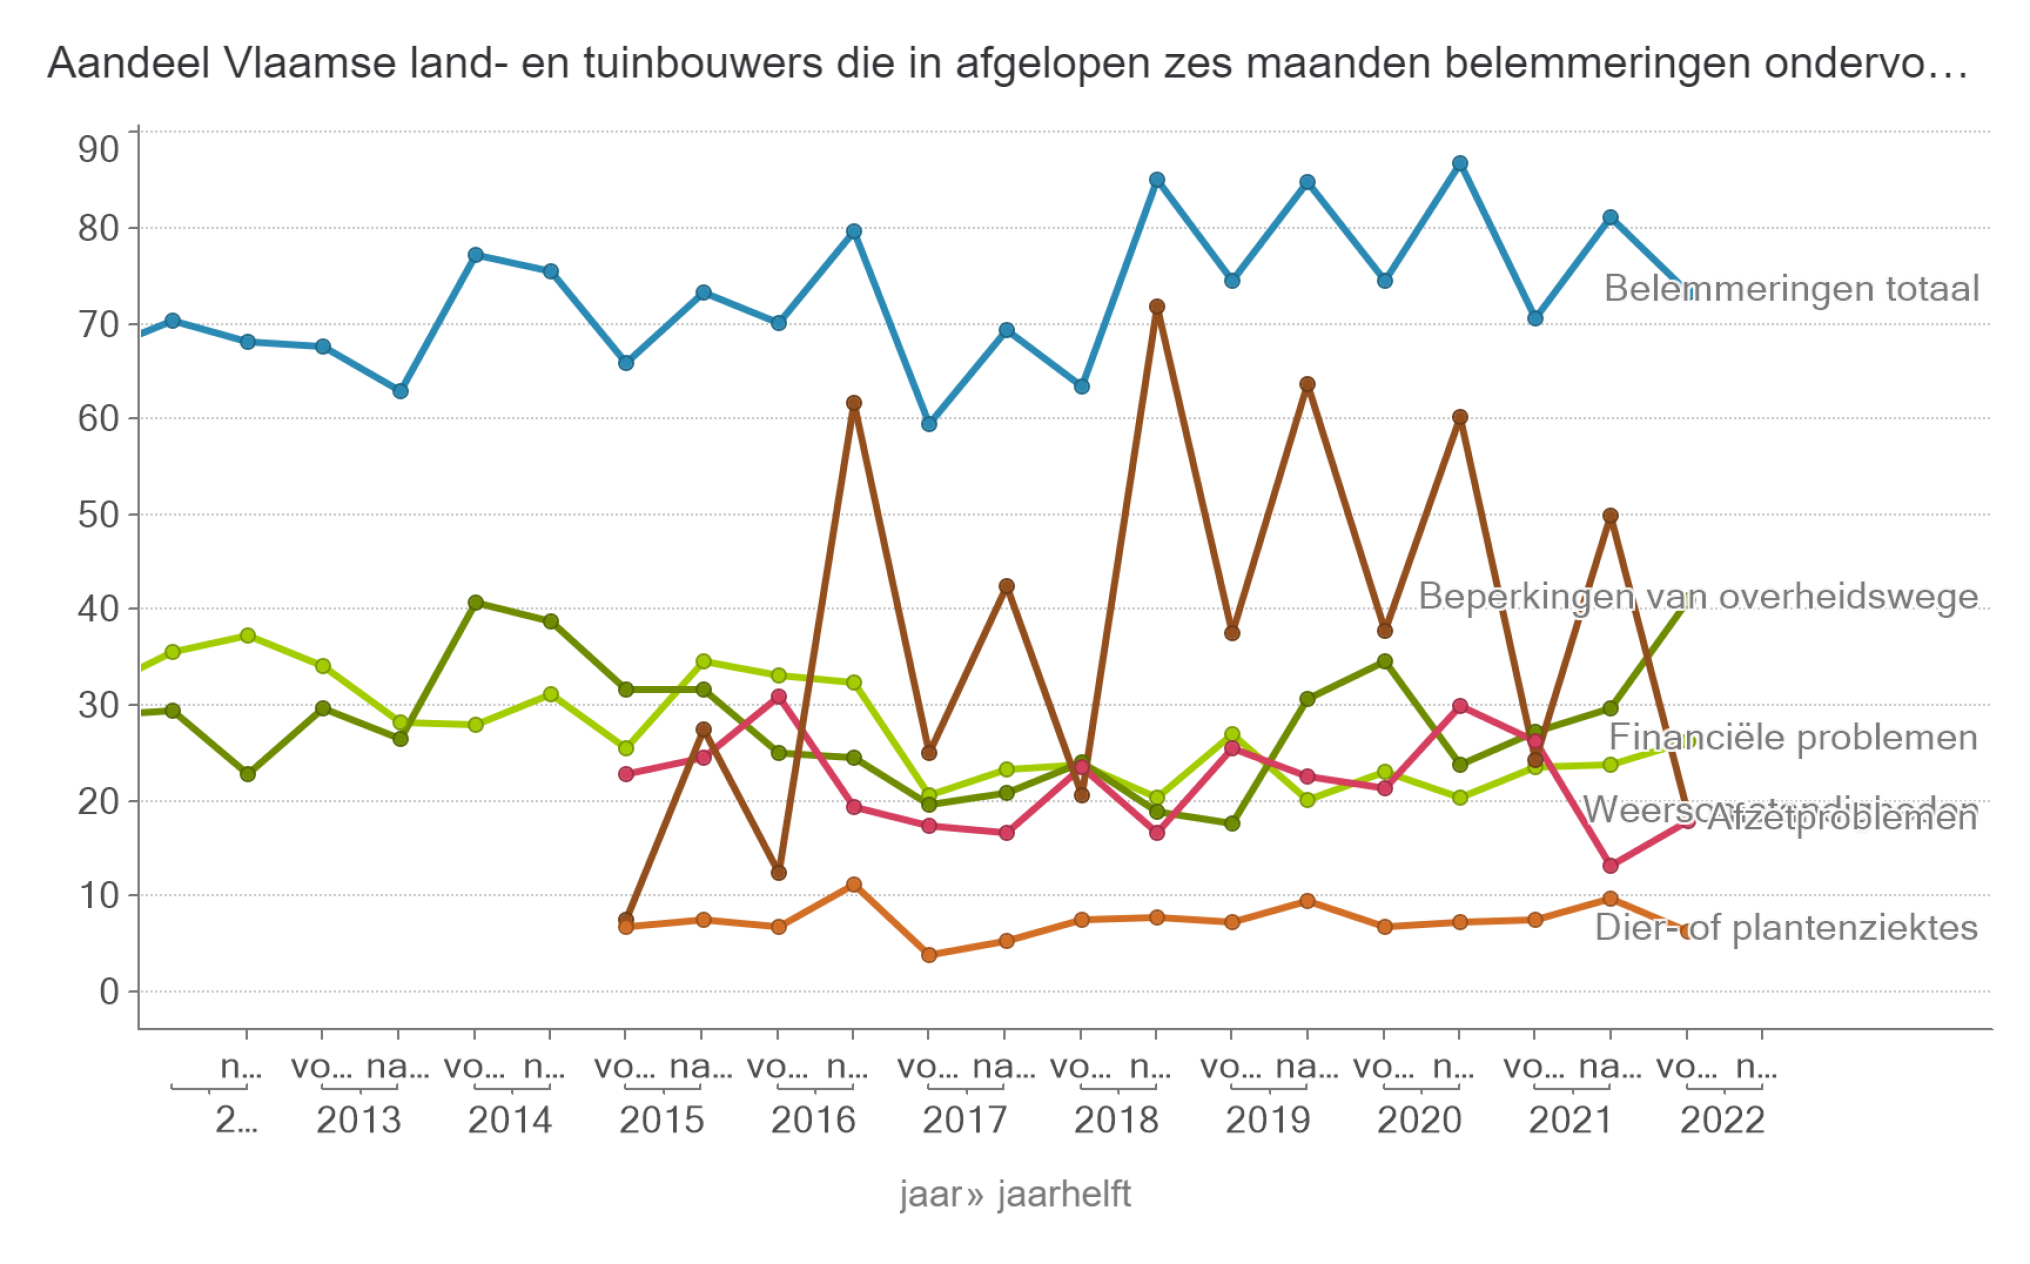 Aandeel Vlaamse land- en tuinbouwers die in afgelopen zes maanden belemmeringen ondervonden